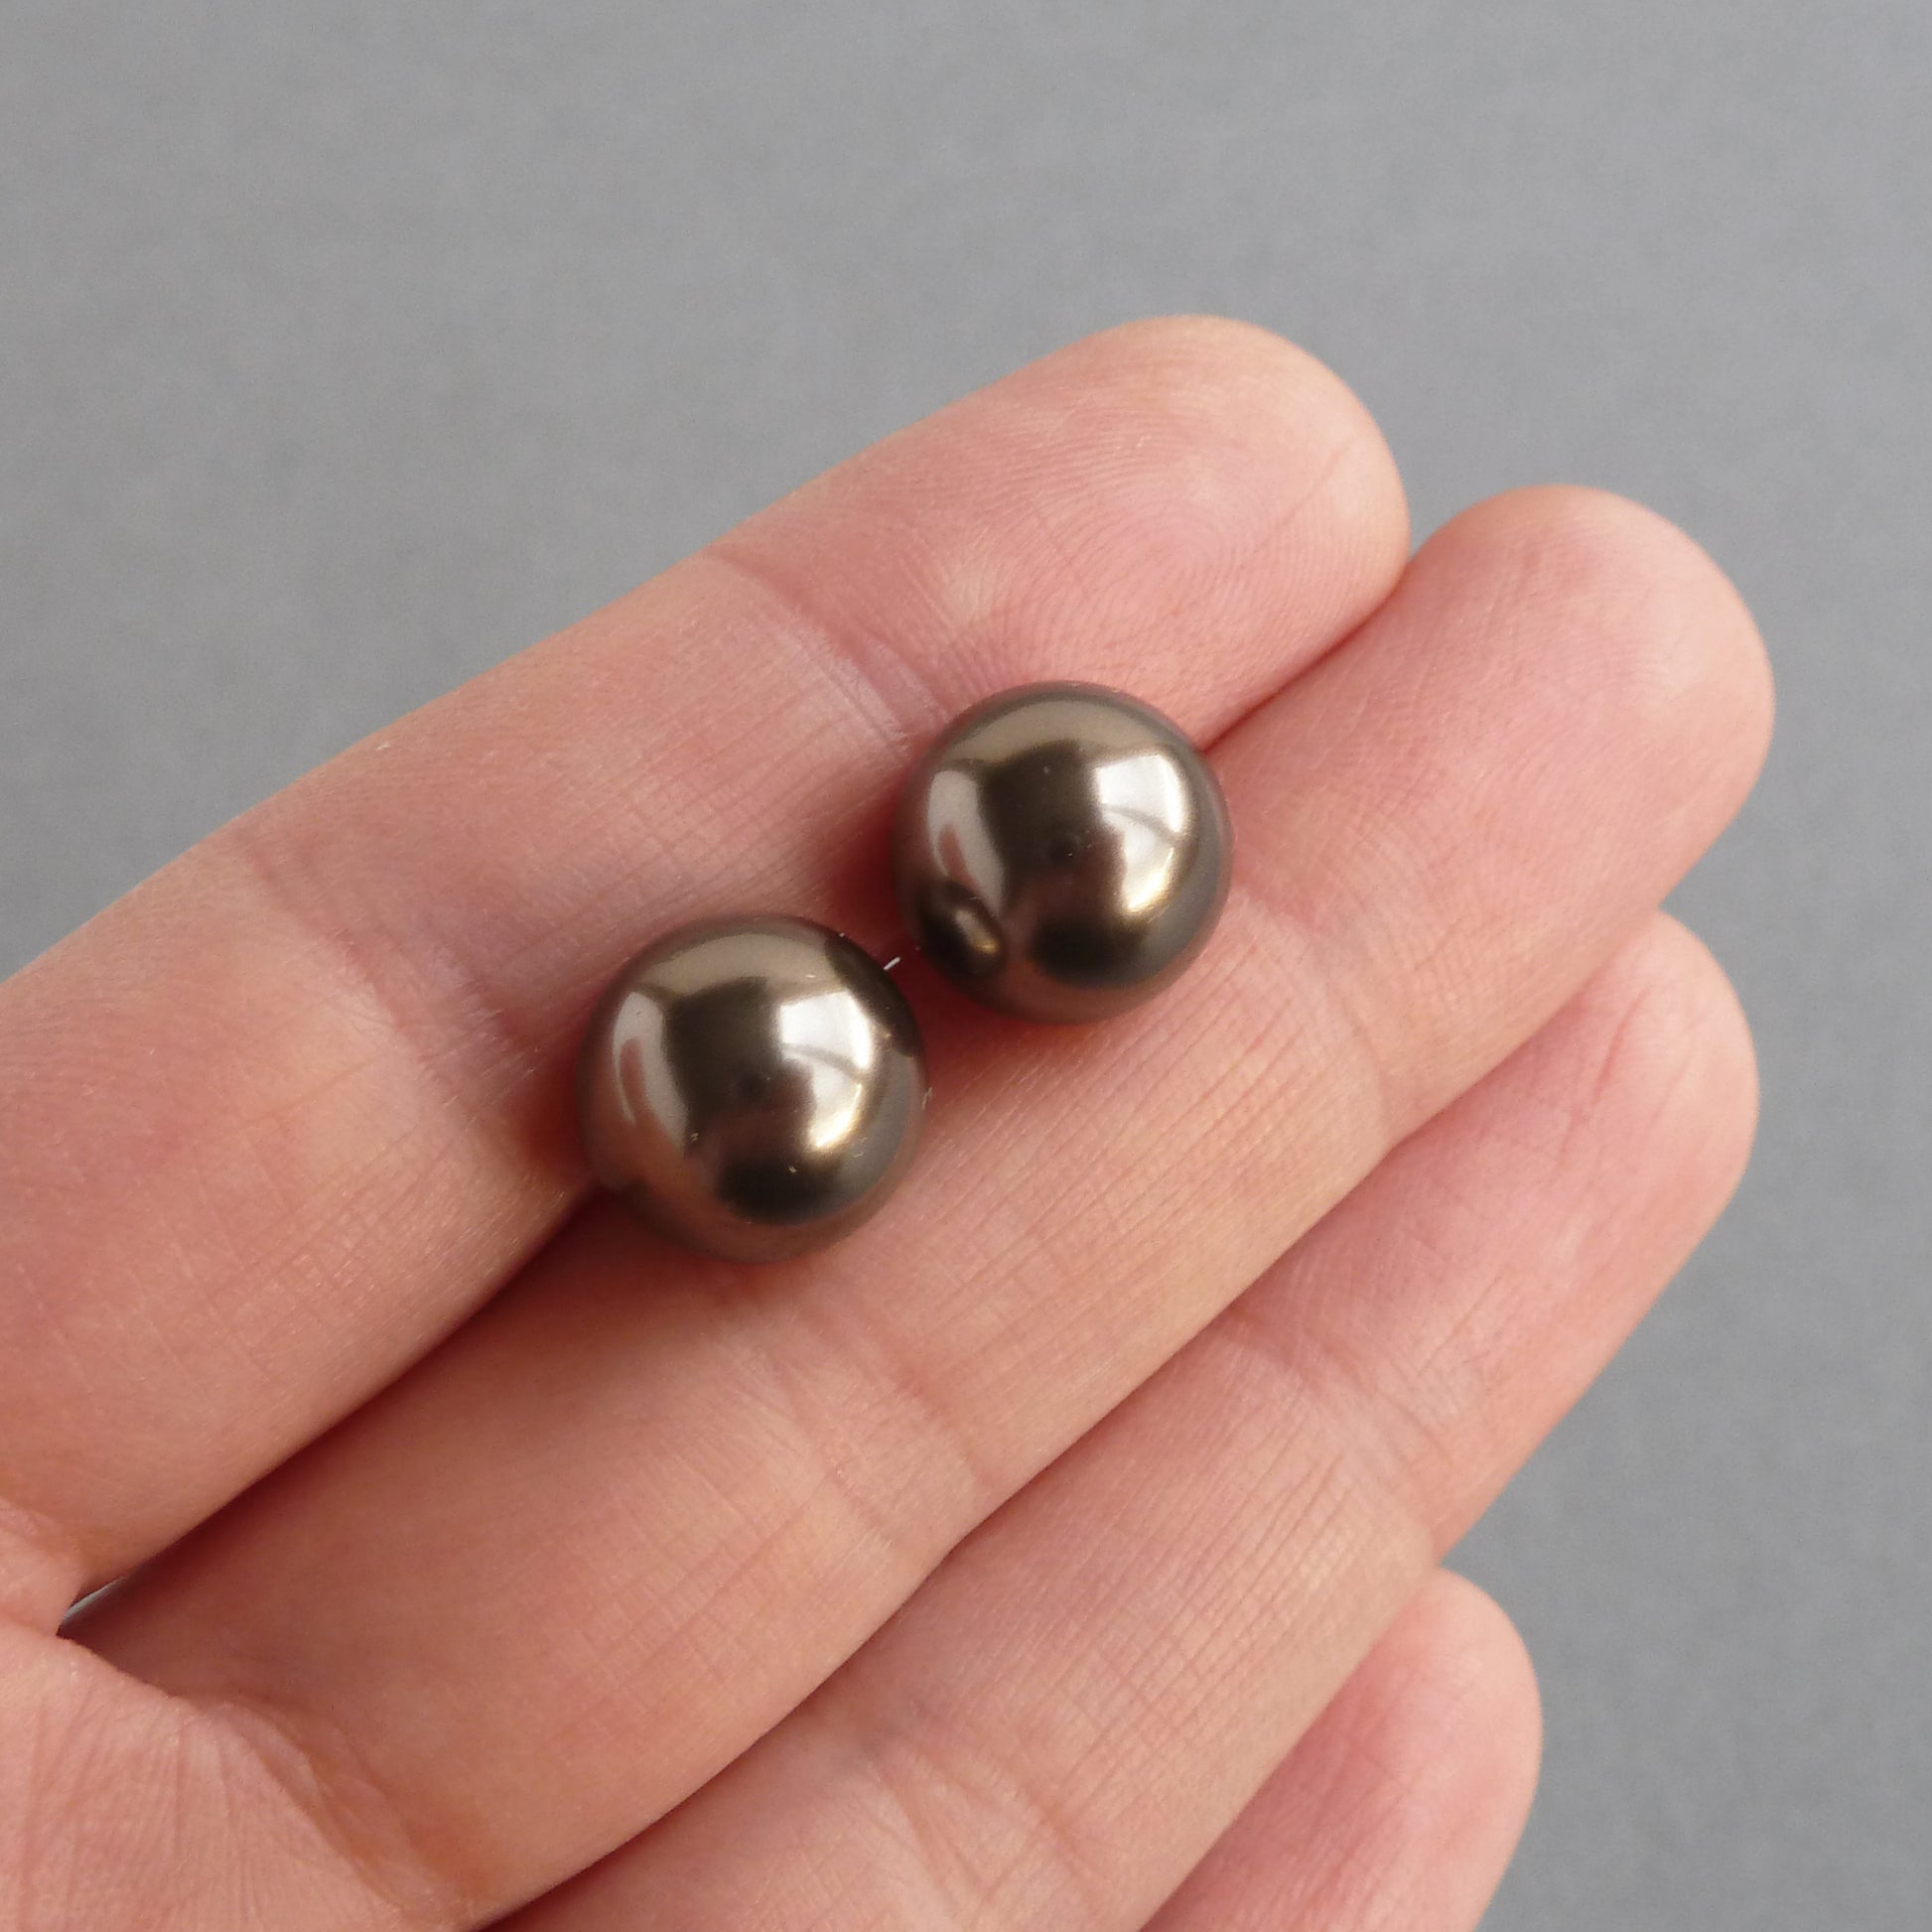 12mm dark brown pearl stud earrings